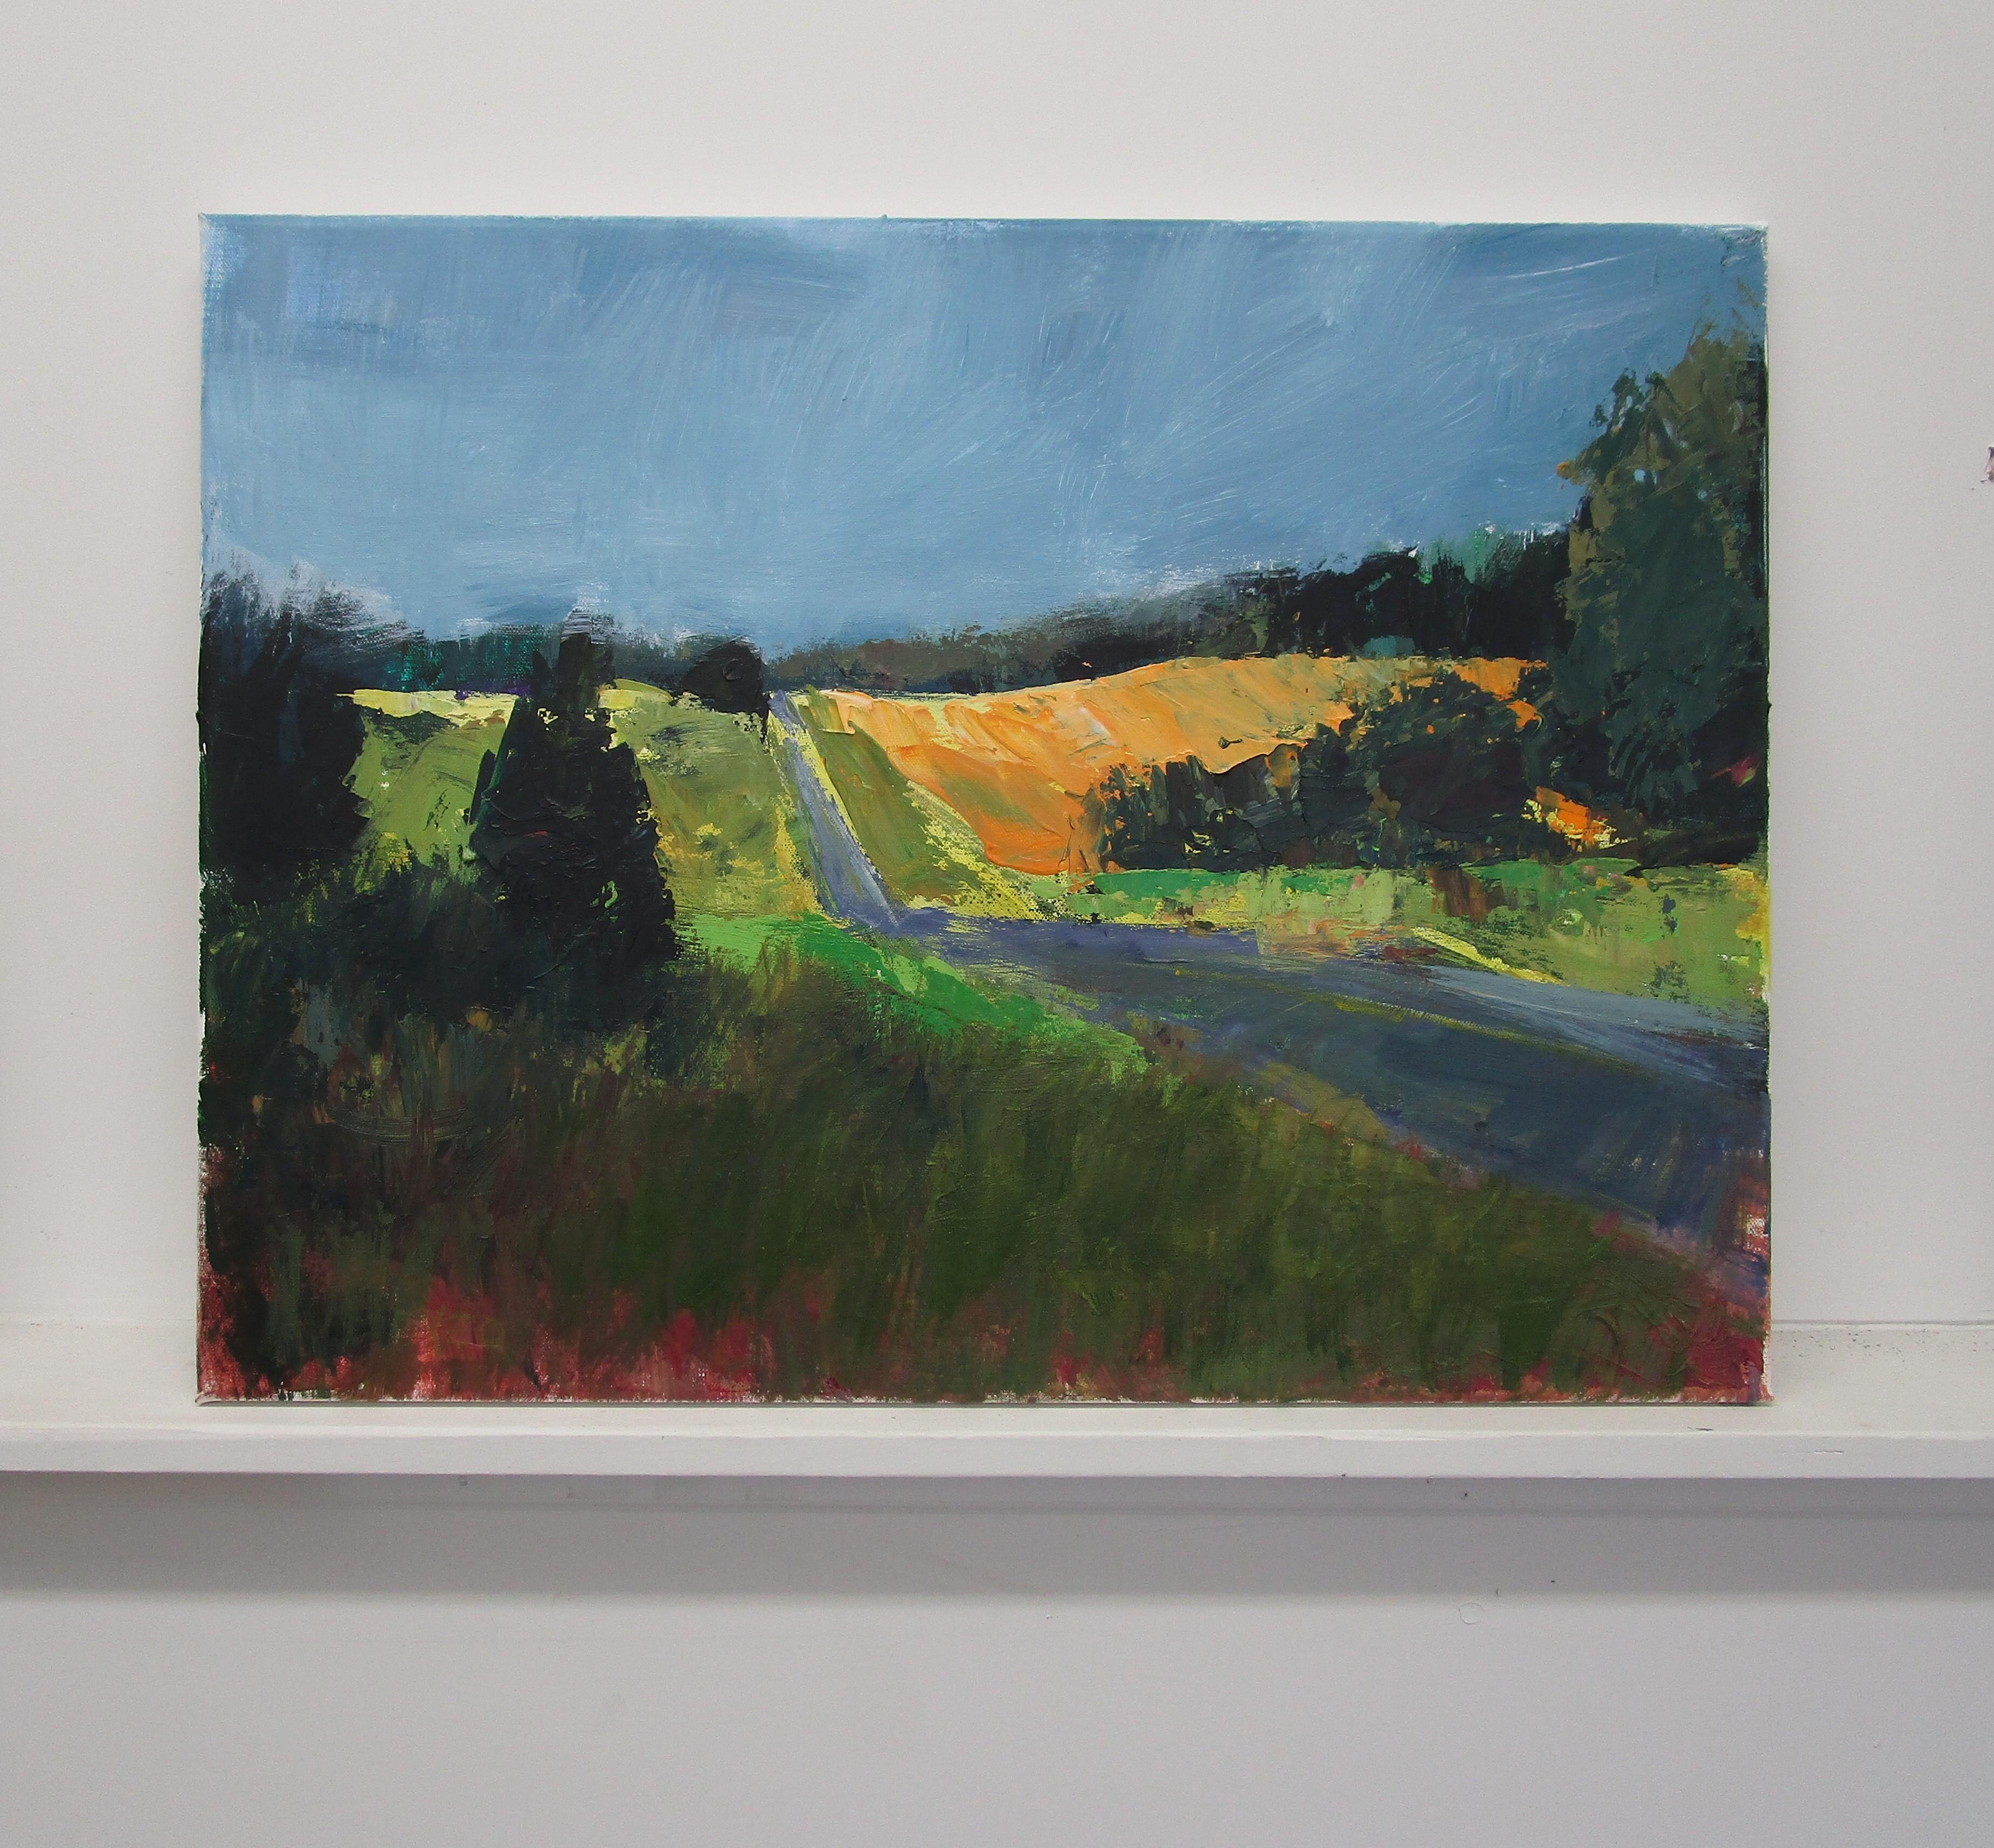 <p>Kommentare der Künstlerin<br />Die Künstlerin Janet Dyer hat einen ruhigen Straßenabschnitt in den sanften Hügeln des ländlichen Englands eingefangen. Gestenhafte, breite Striche in kräftigen und tiefen Farben unterbrechen die leuchtend